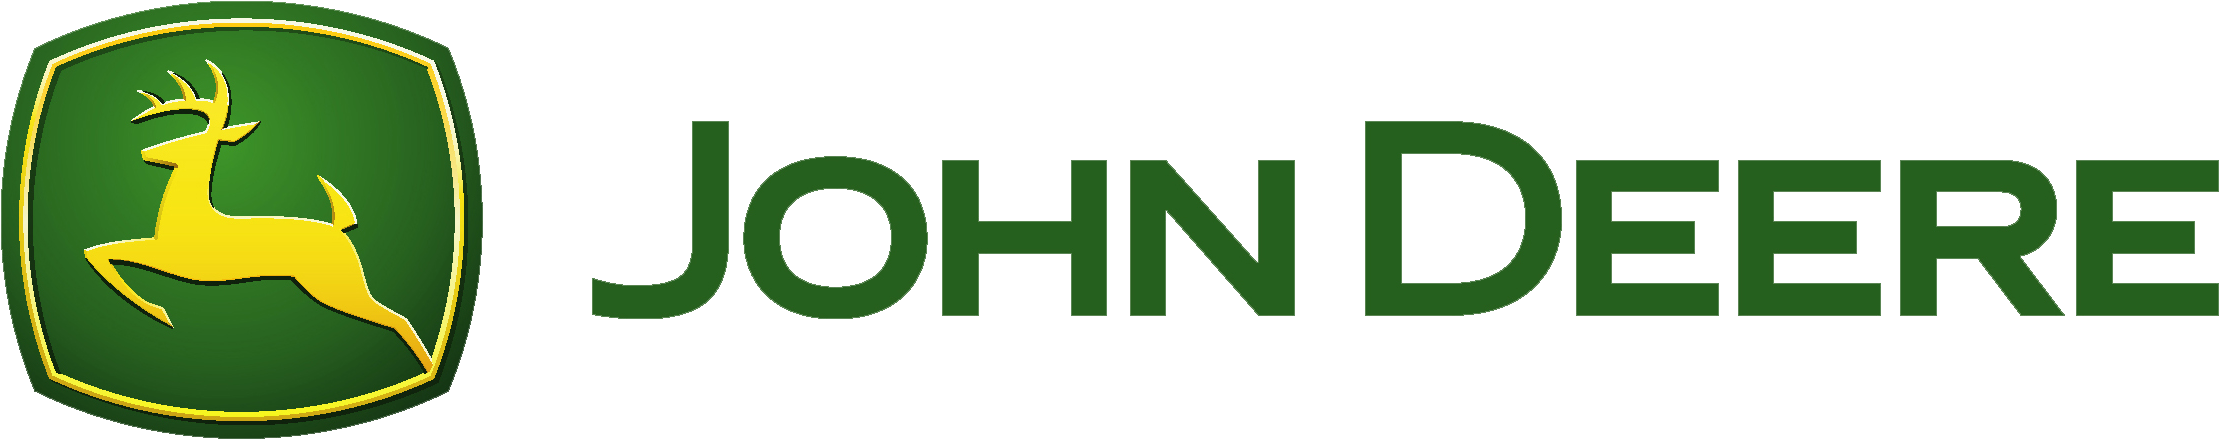 John Deere Png Picture - John Deere Tractor Logo (3246x720)